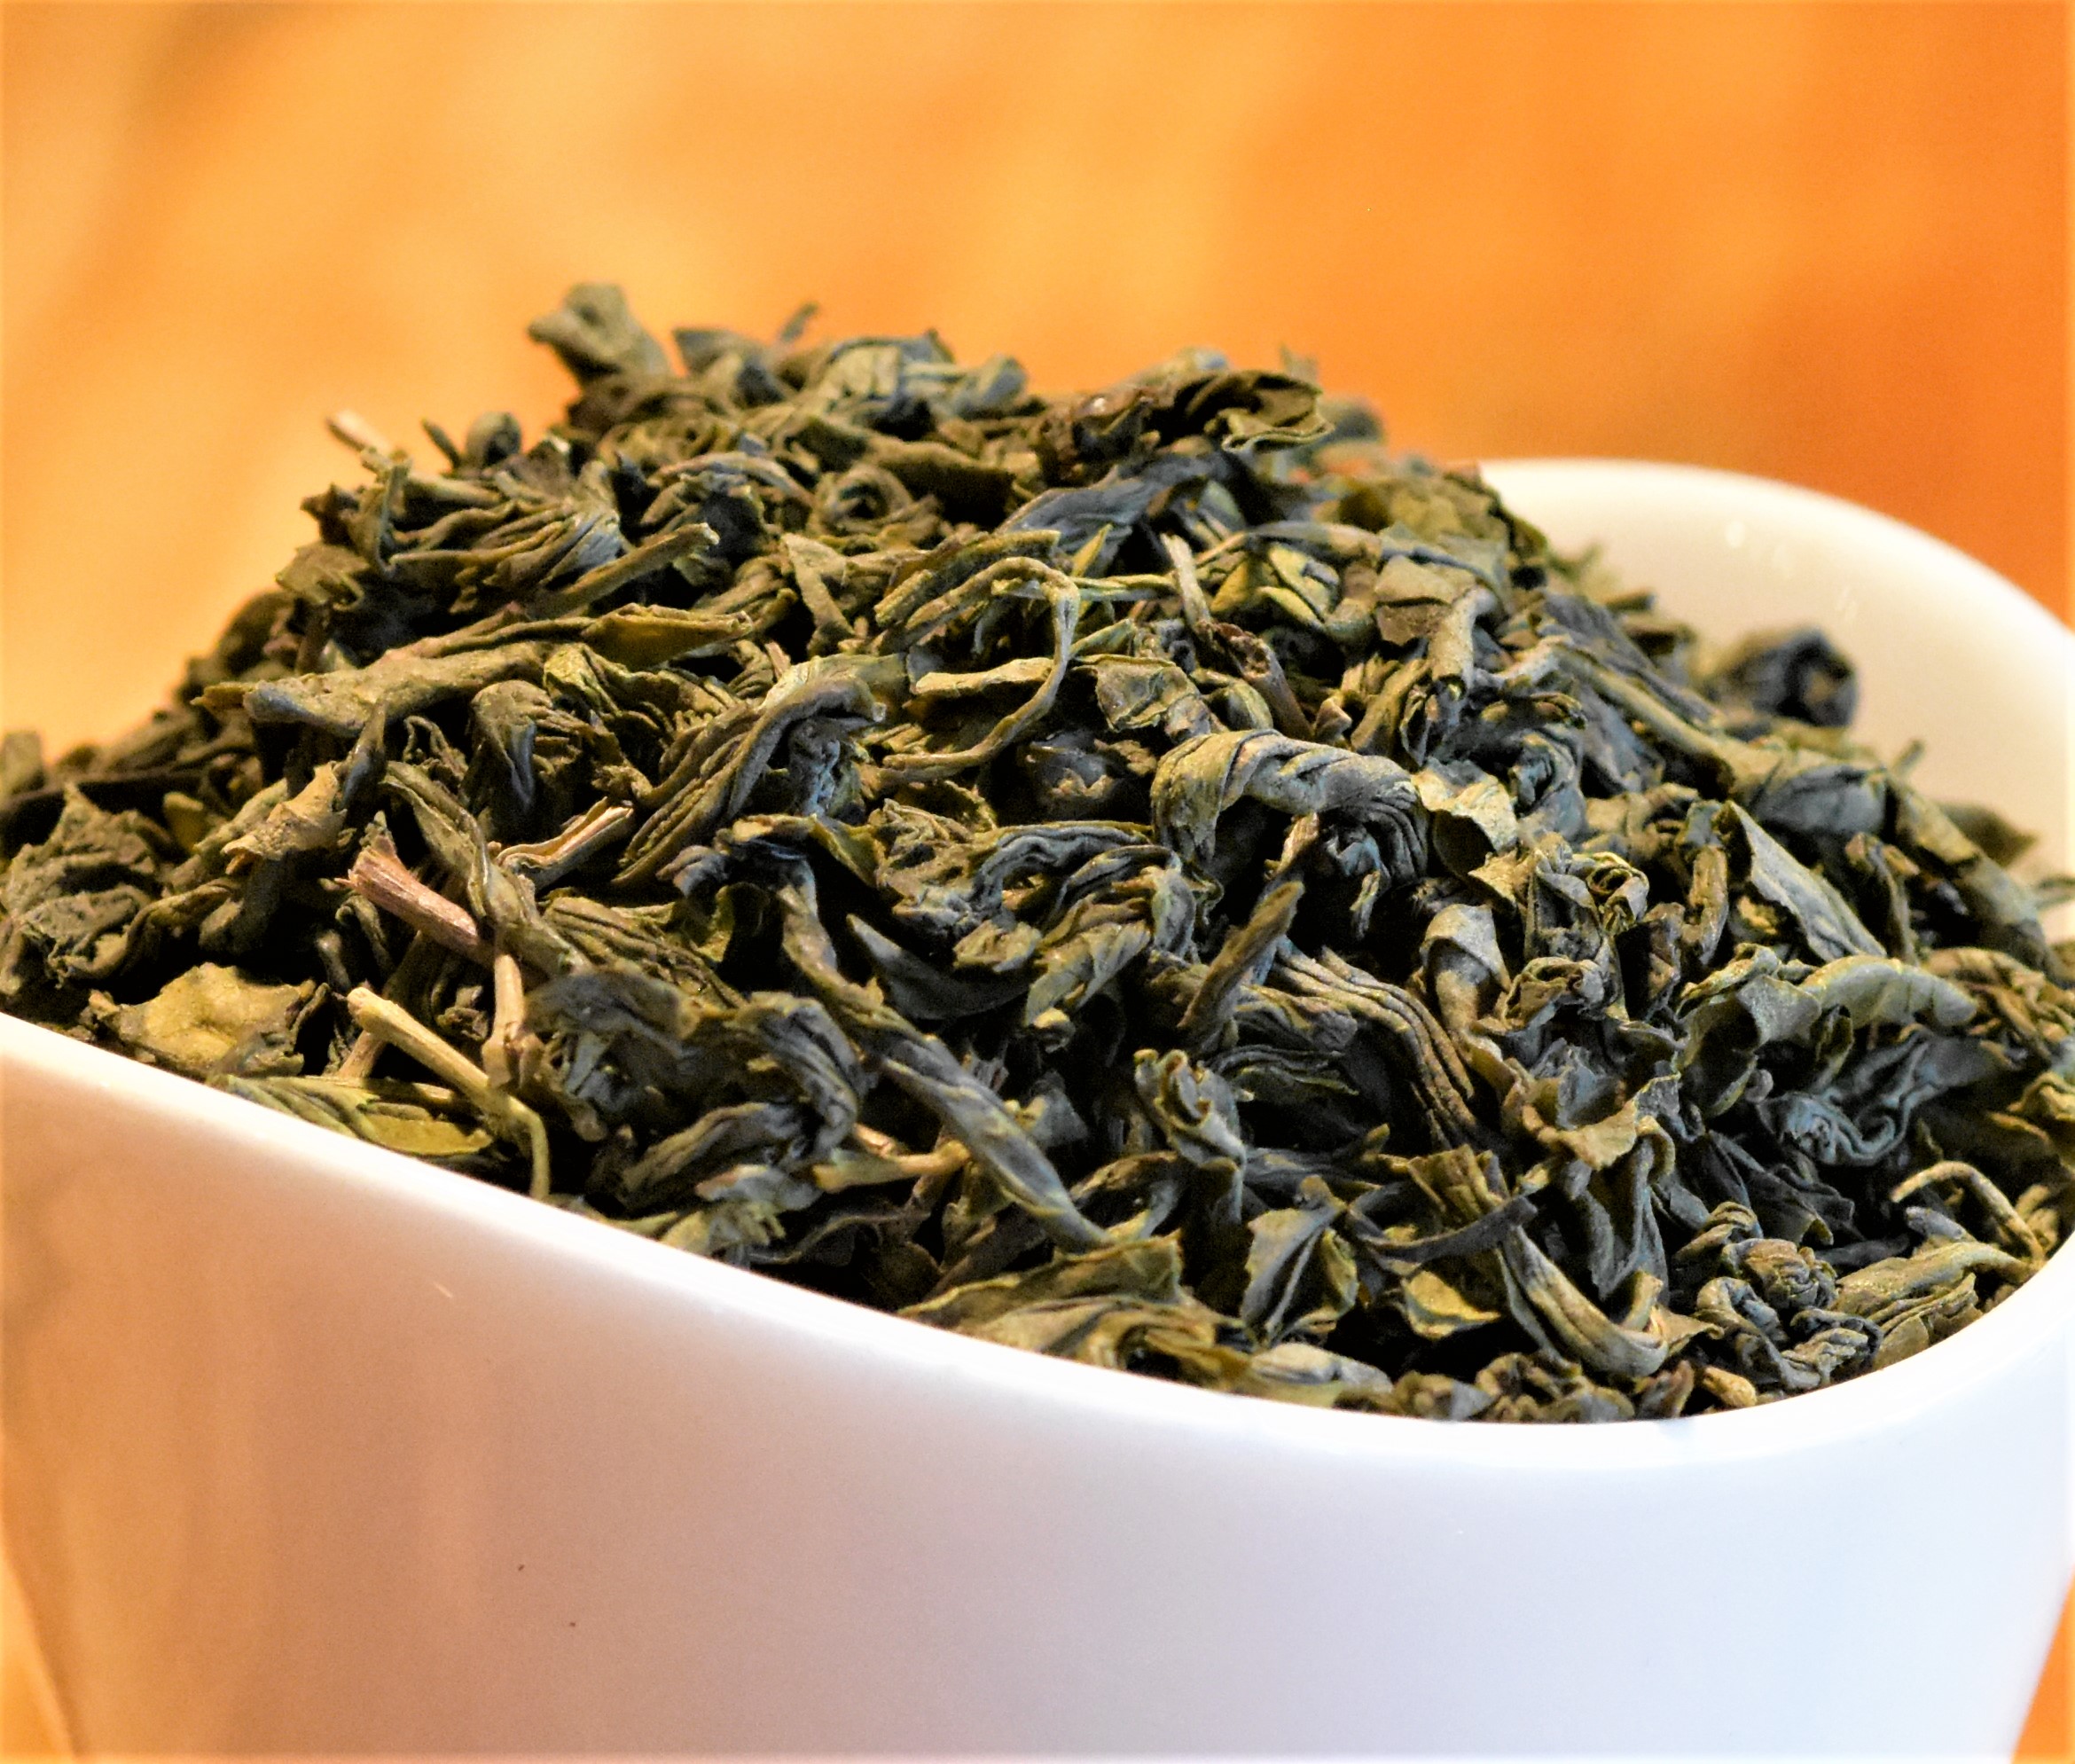 Chunmee Green Tea